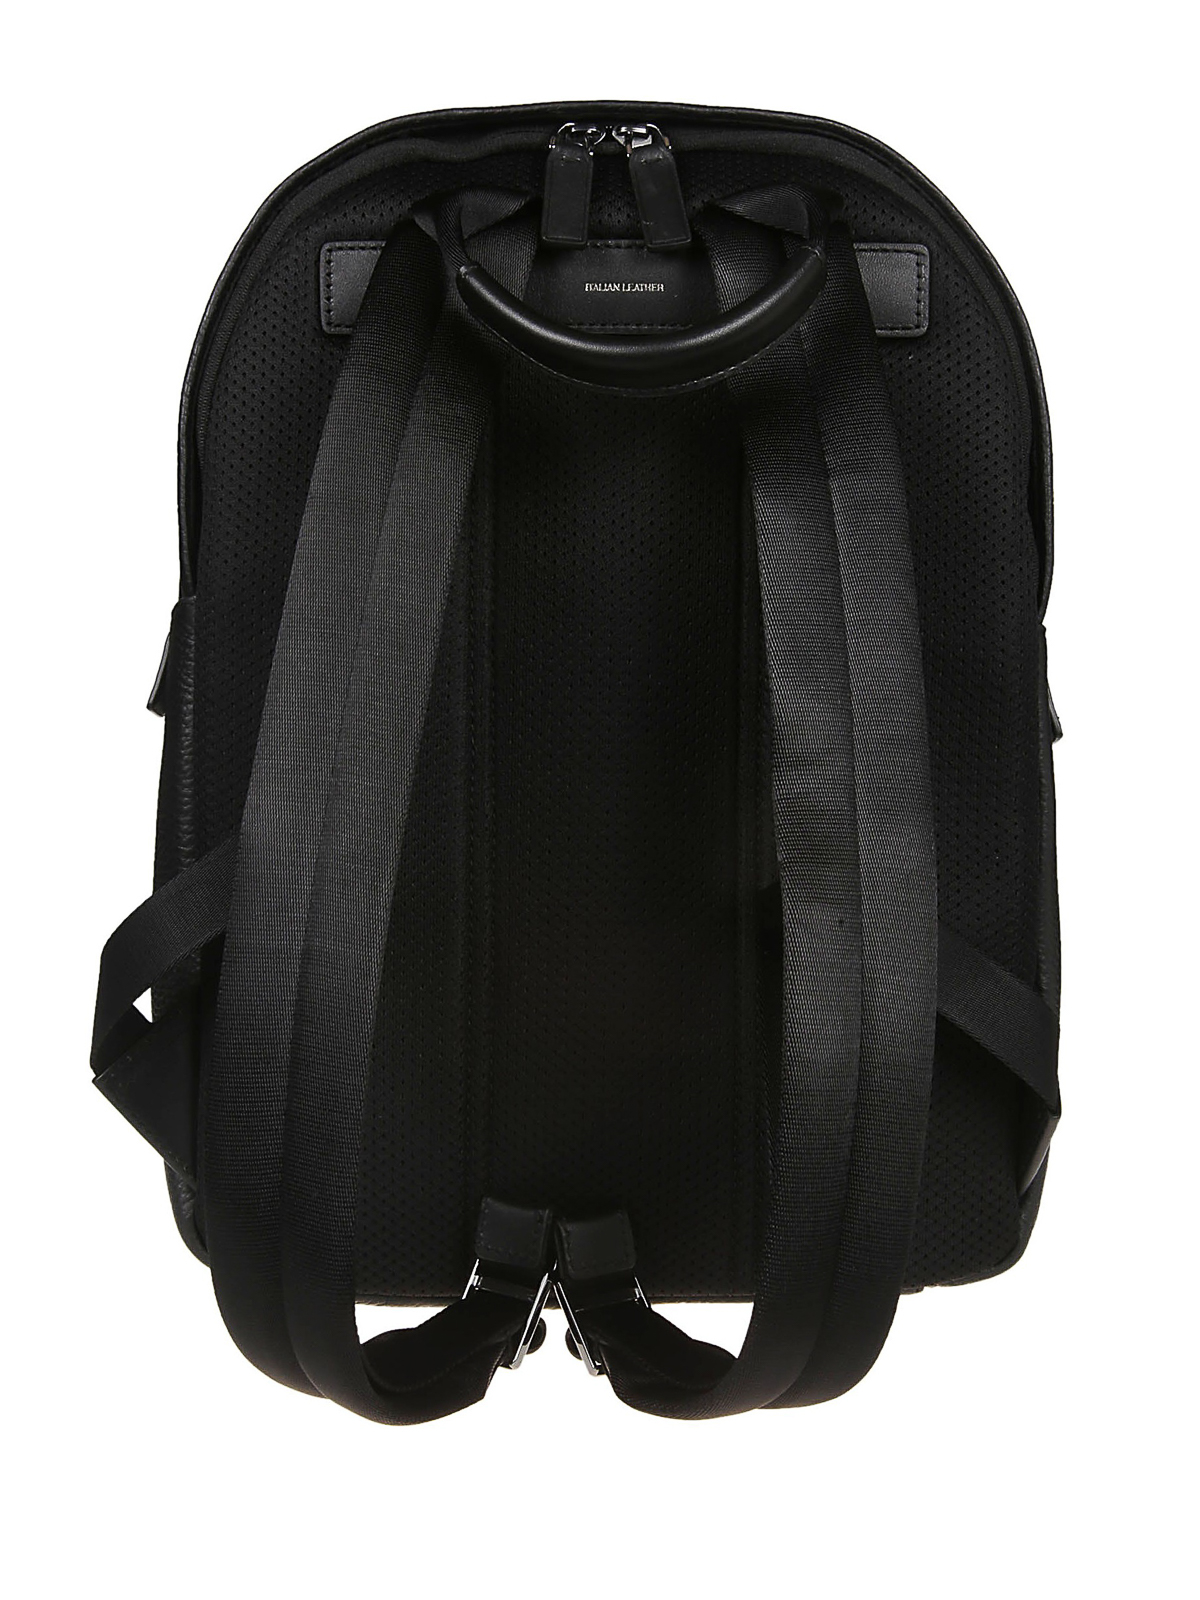 Khám phá với hơn 76 michael kors greyson backpack tuyệt vời nhất  trieuson5